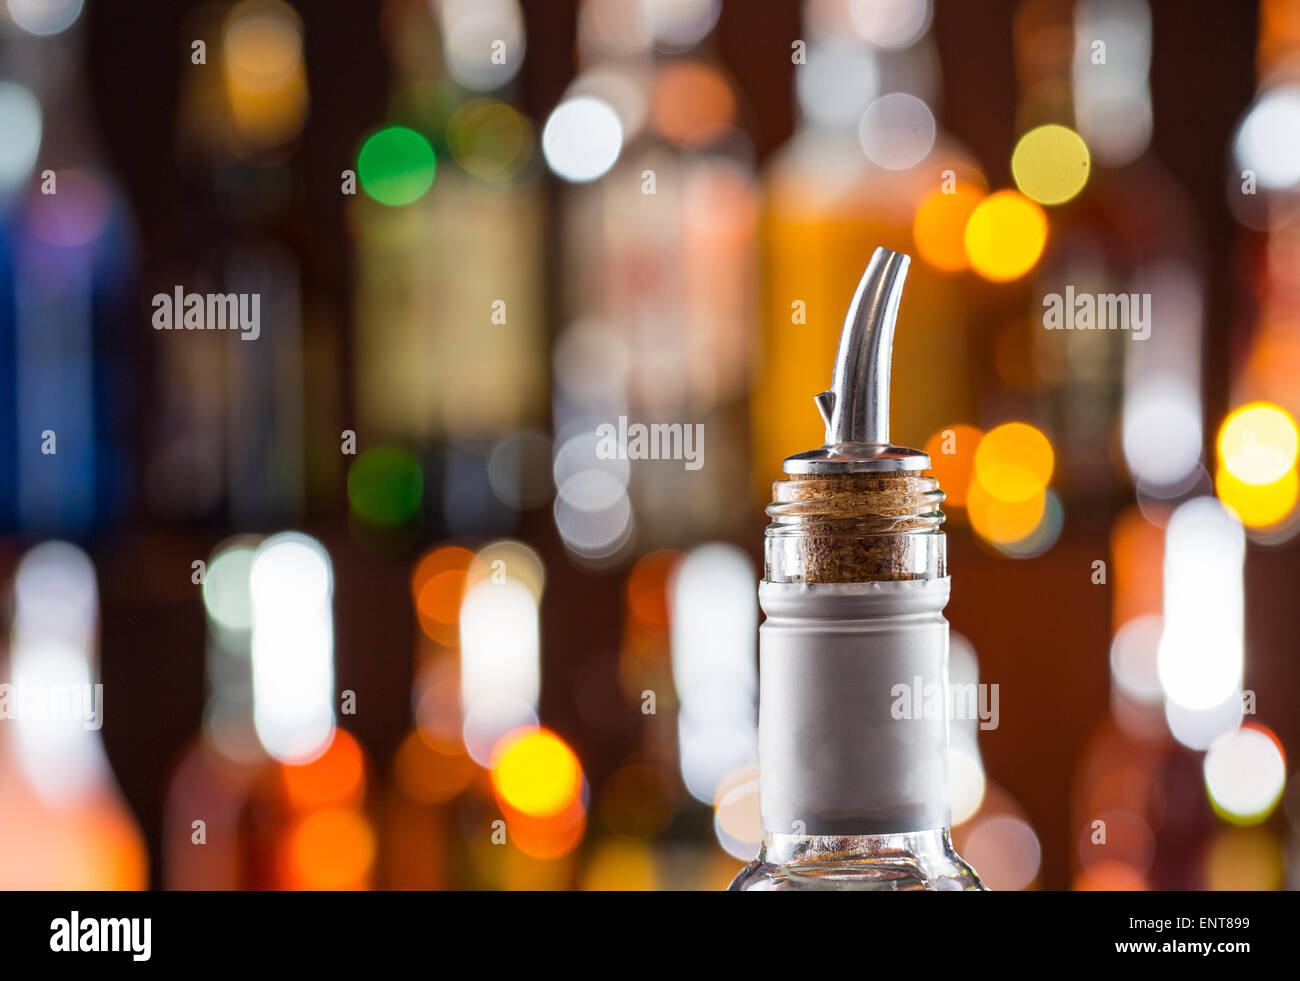 Dettaglio della bottiglia di alcool con un materiale di riempimento sulla barra, close-up. Foto Stock